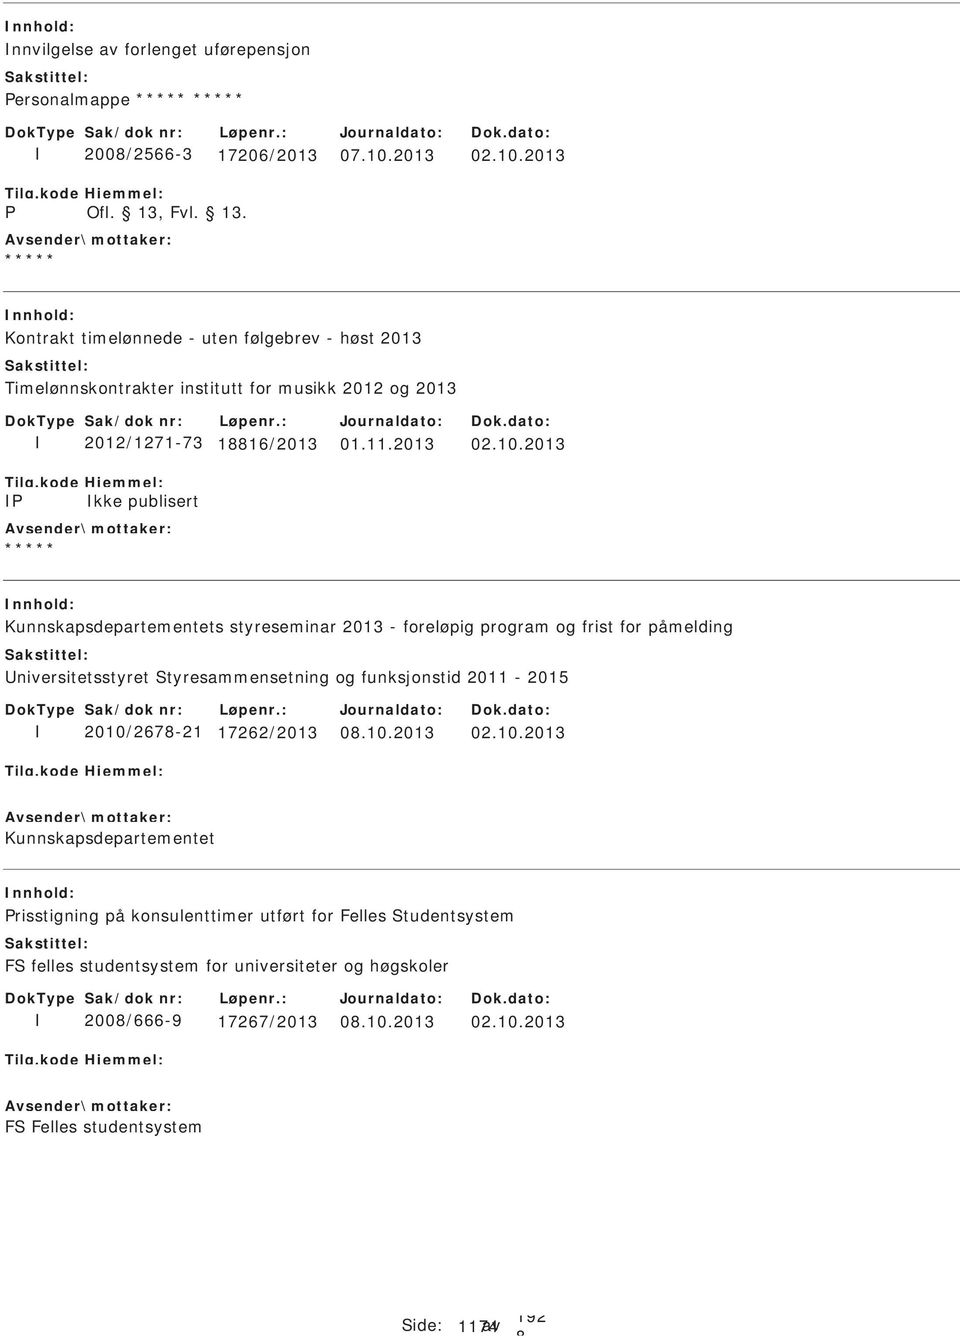 2013 Kontrakt timelønnede - uten følgebrev - høst 2013 Timelønnskontrakter institutt for musikk 2012 og 2013 P 2012/1271-73 116